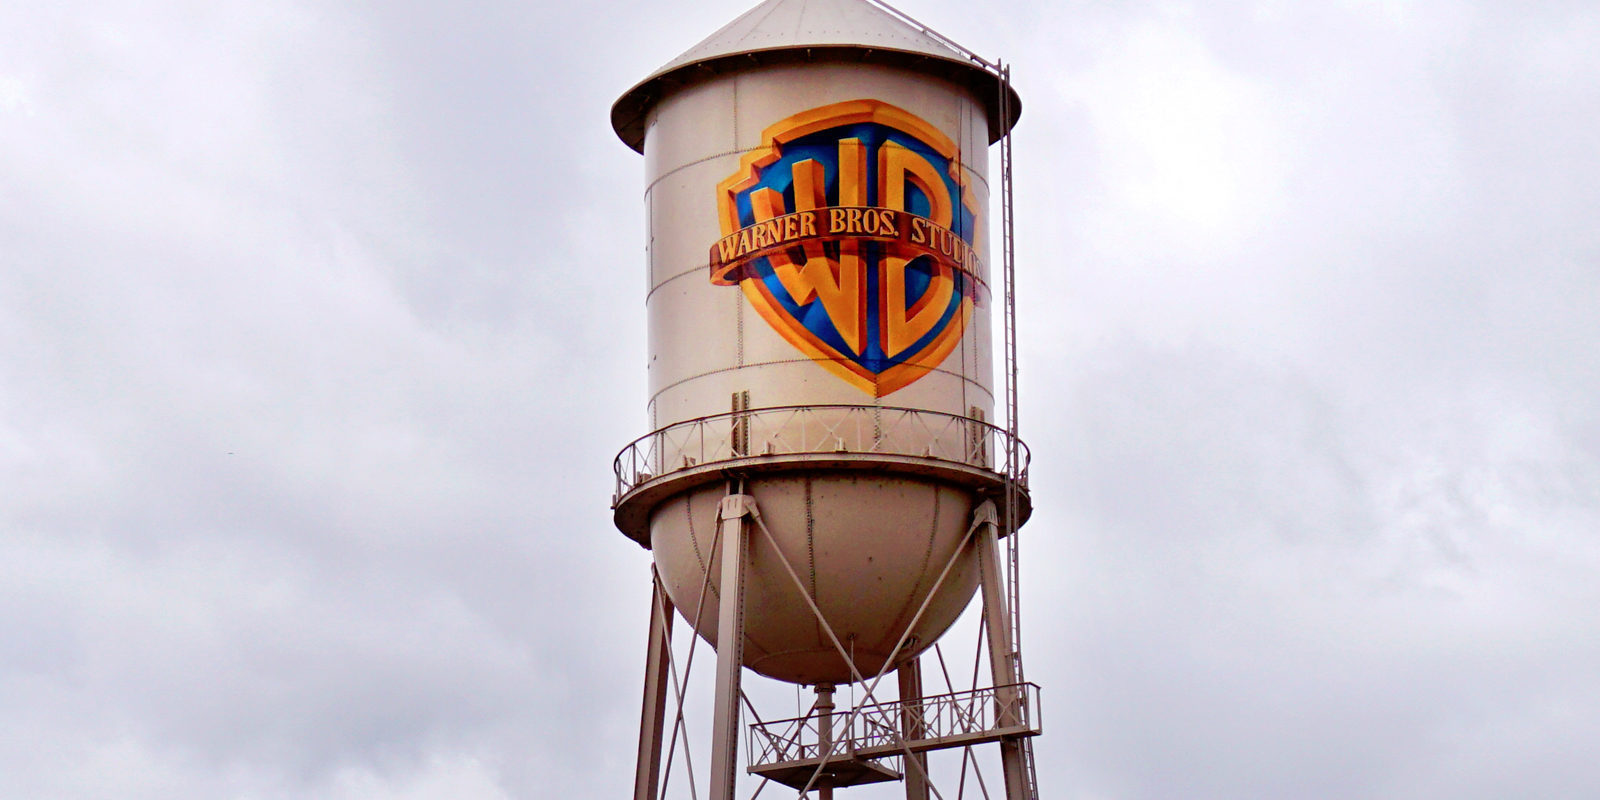 Una ex-empleada de Warner Bros. carga contra el estudio en una carta a su Presidente